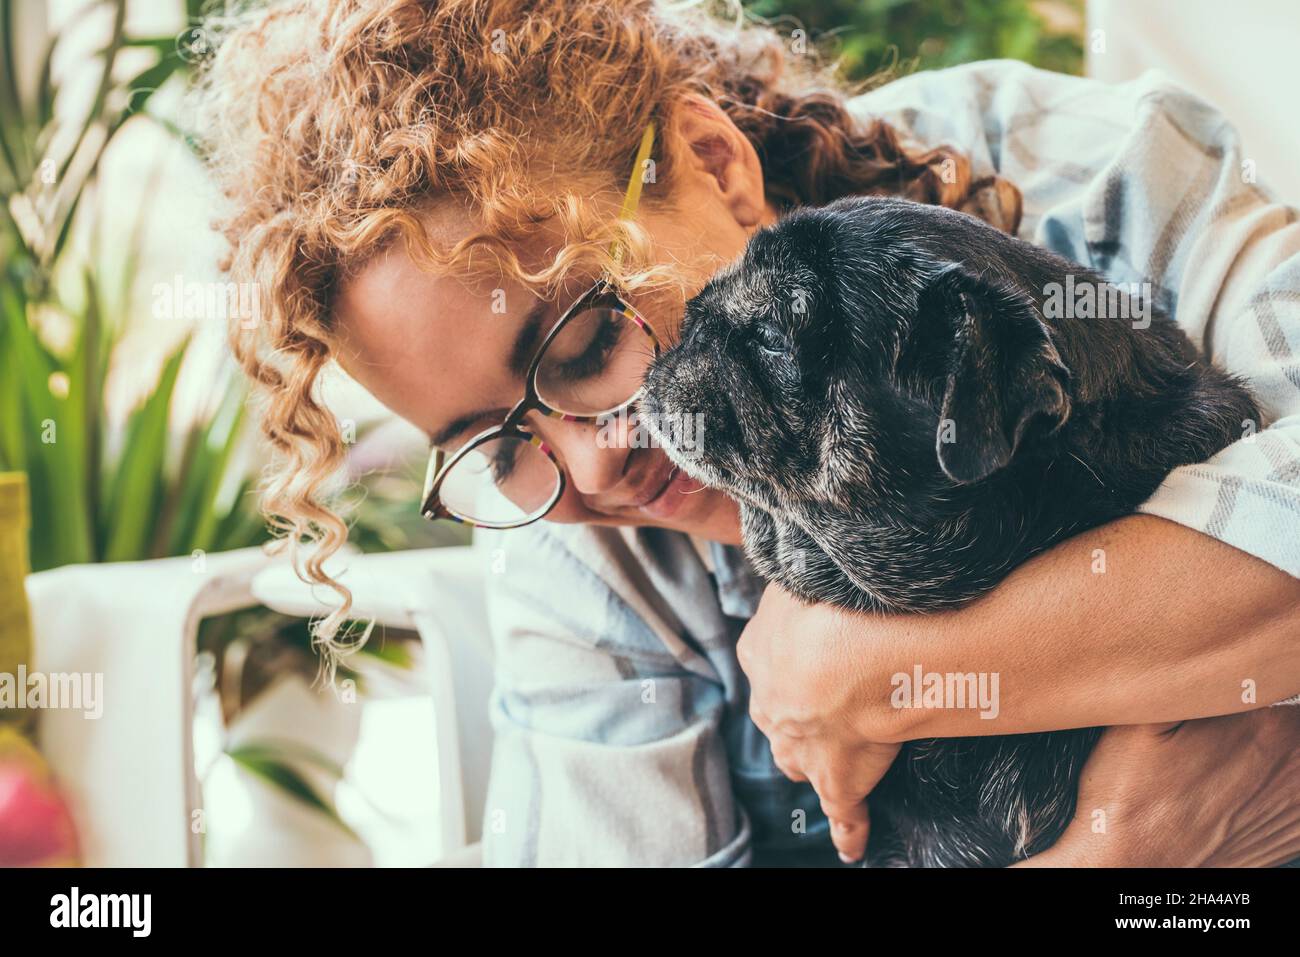 Glückliche Frau mit ihrem besten Freund Hund Mops in zärtlich Freizeit Aktivität zusammen zu Hause. Liebe Menschen und Tiere Lifestyle-Konzept. Erwachsene Frau mit Hund Freundschaft Stockfoto